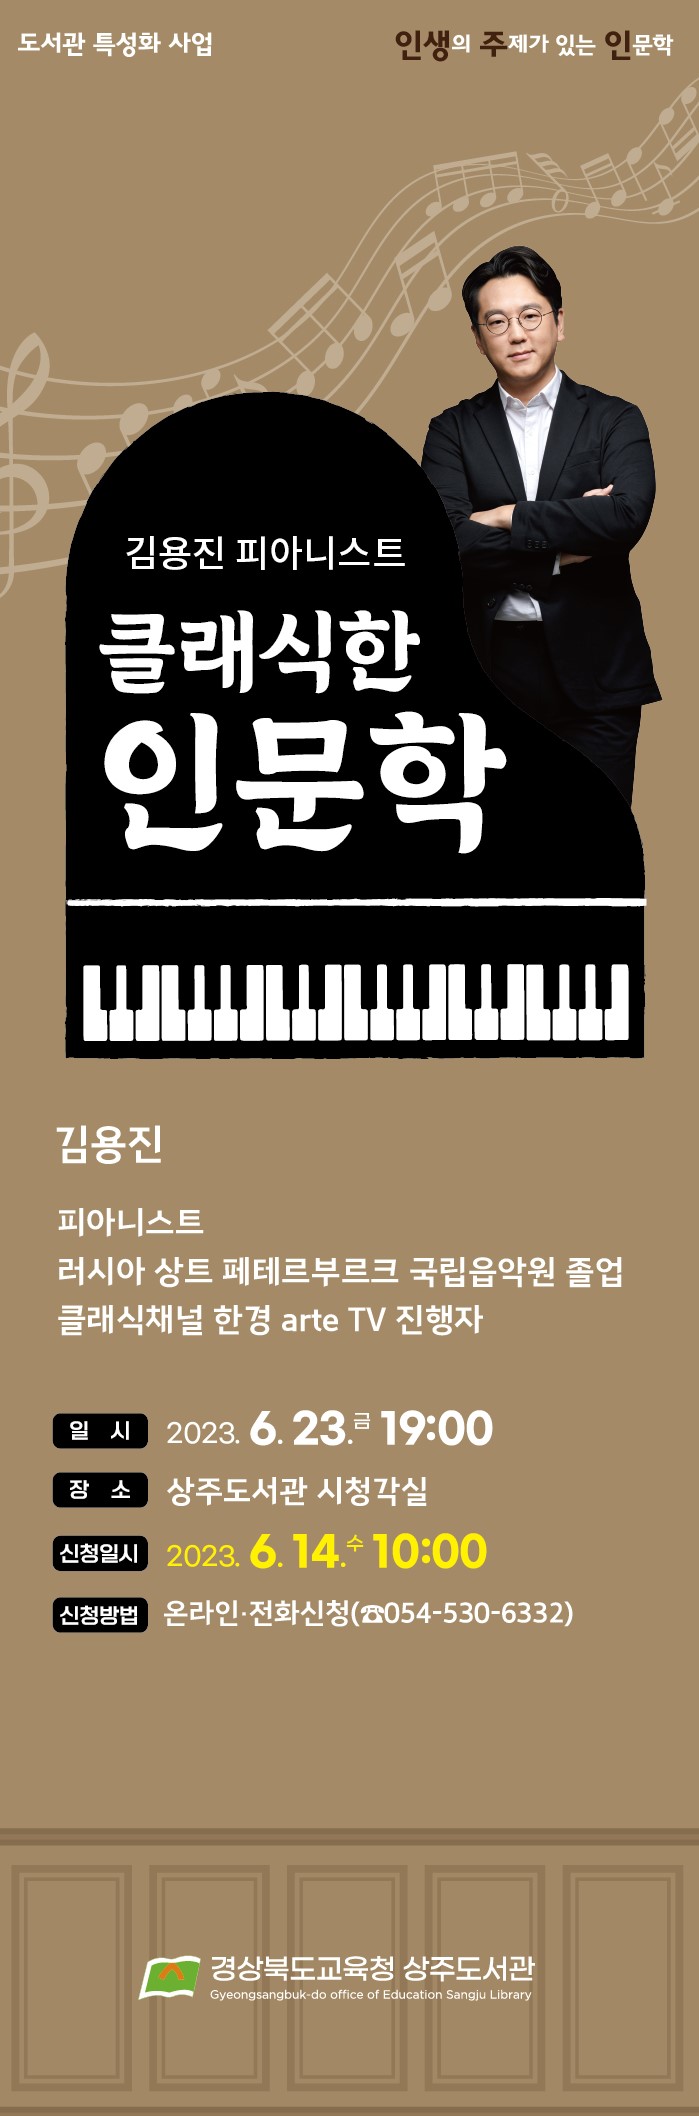 김용진 피아니스트